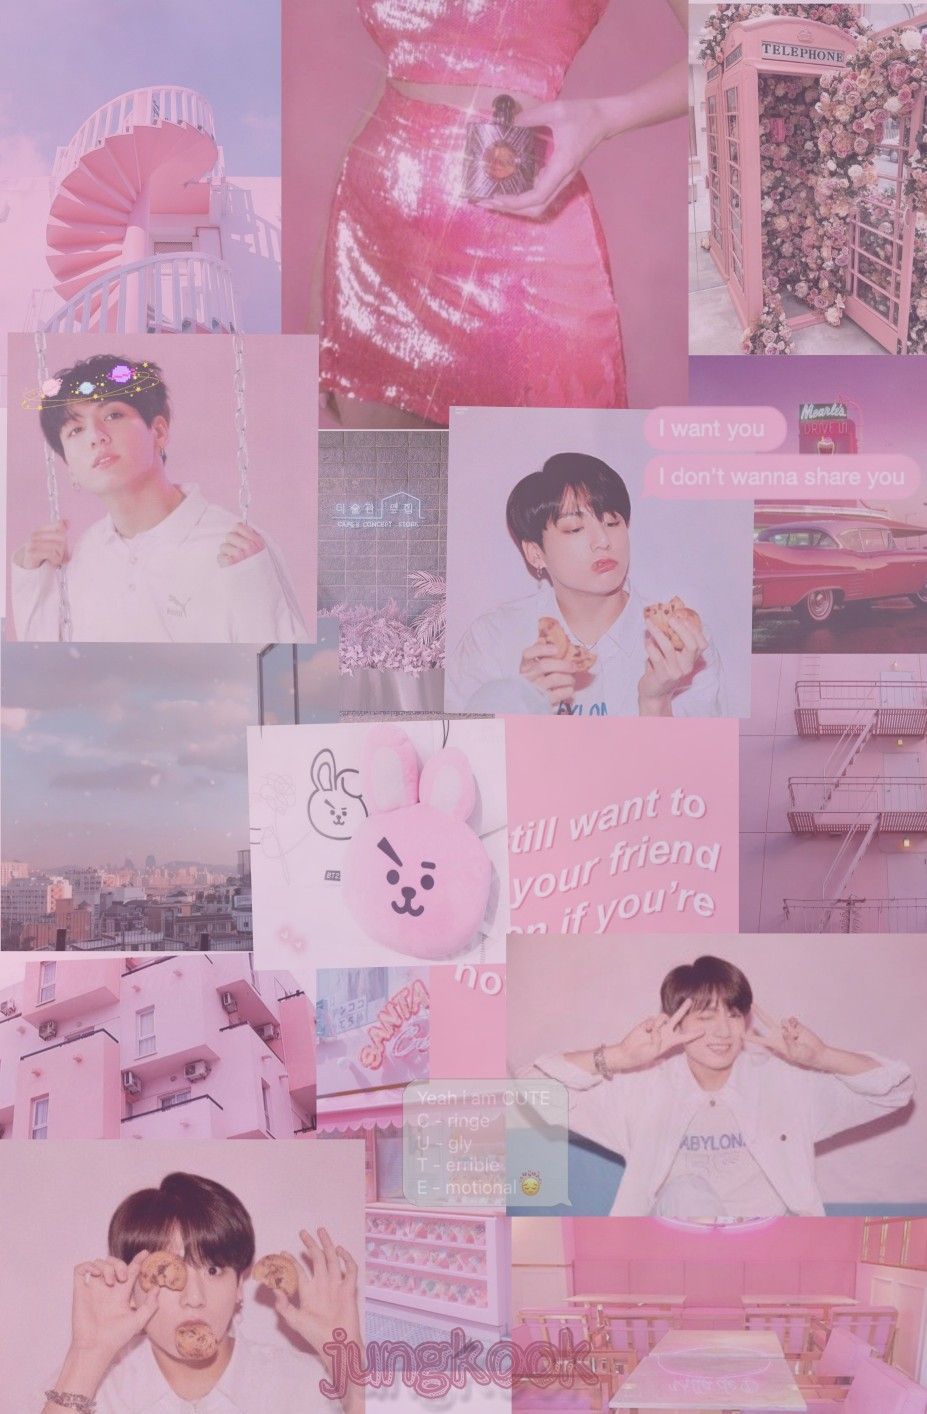 jungkook #aesthetic #army #love #cute #bts #pink #pinkaesthetic. Bts wallpaper, Bts laptop wallpaper, Bts jungkook